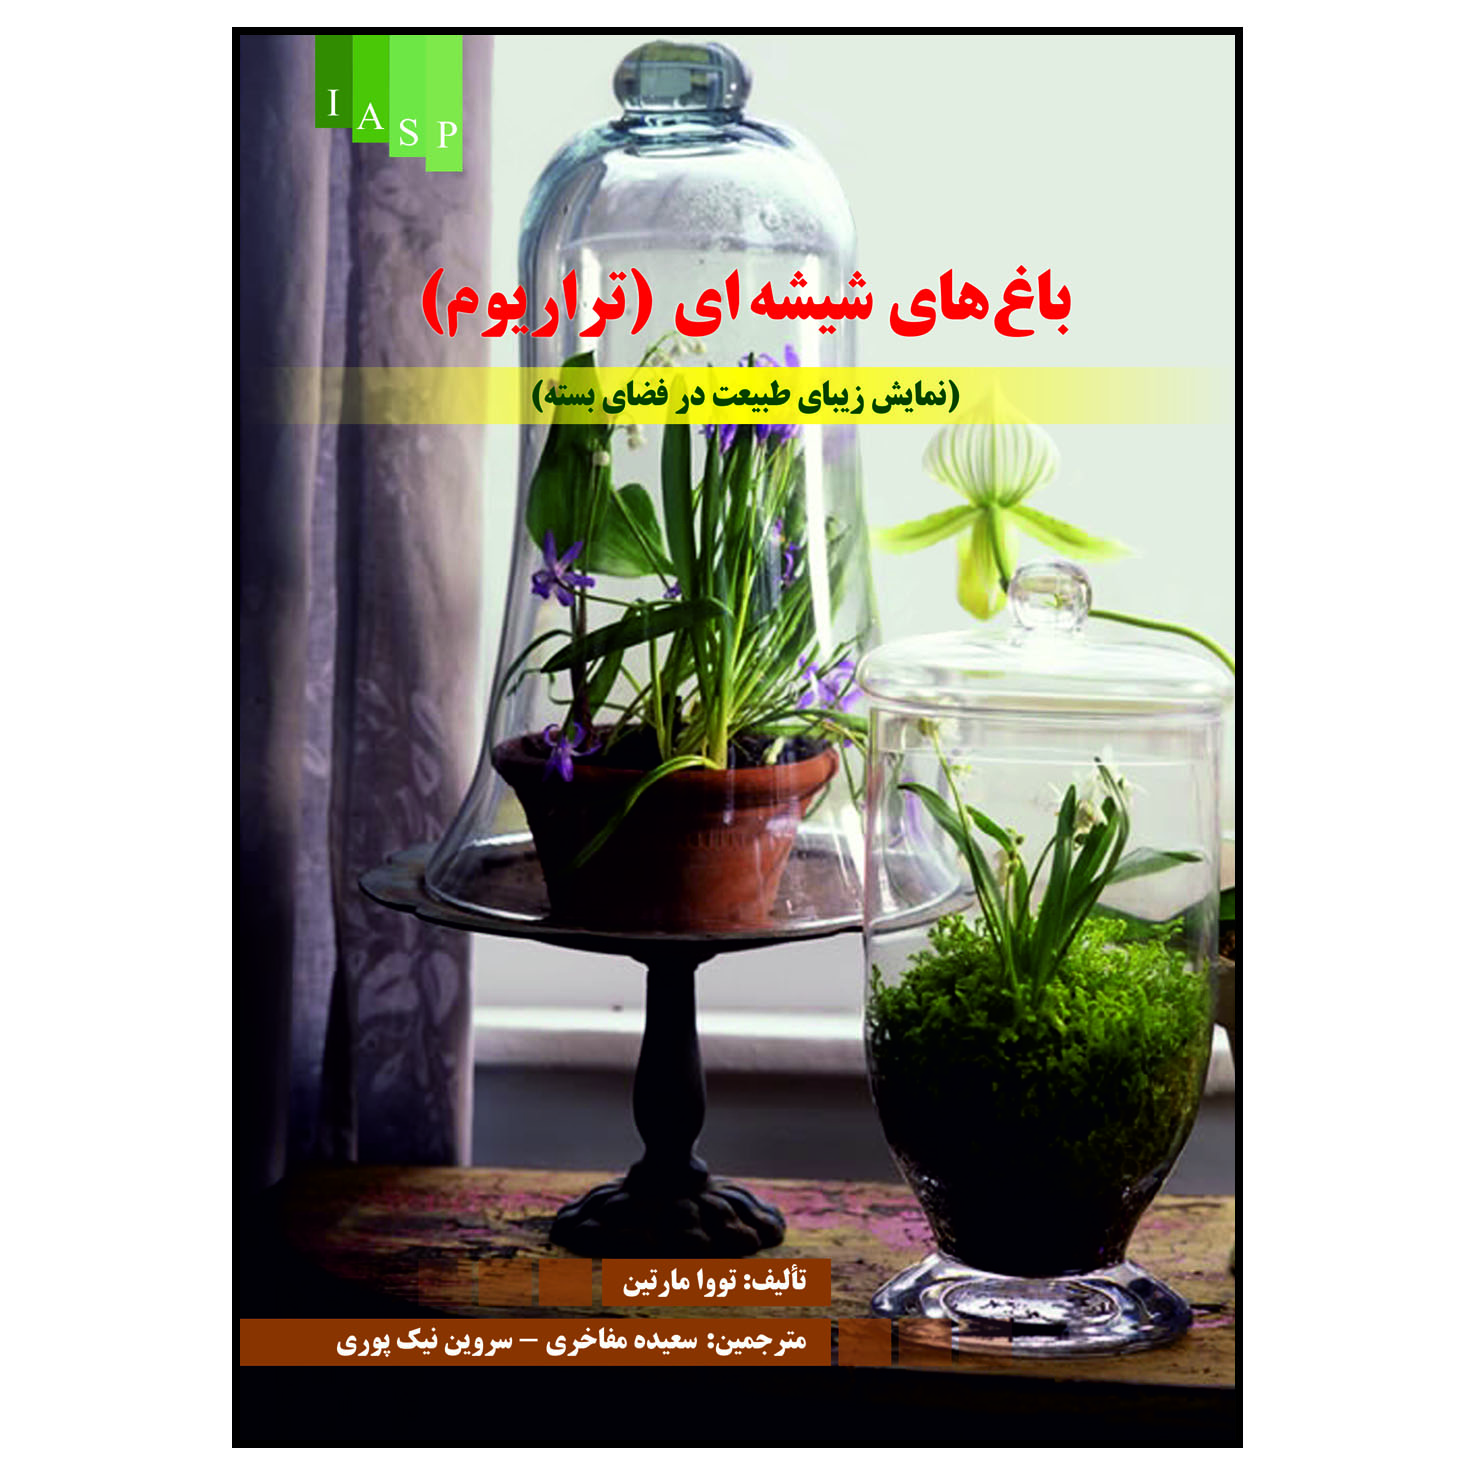 کتاب باغ های شیشه ای (تراریوم) اثر تووا مارتین انتشارات
علم کشاورزی ایران